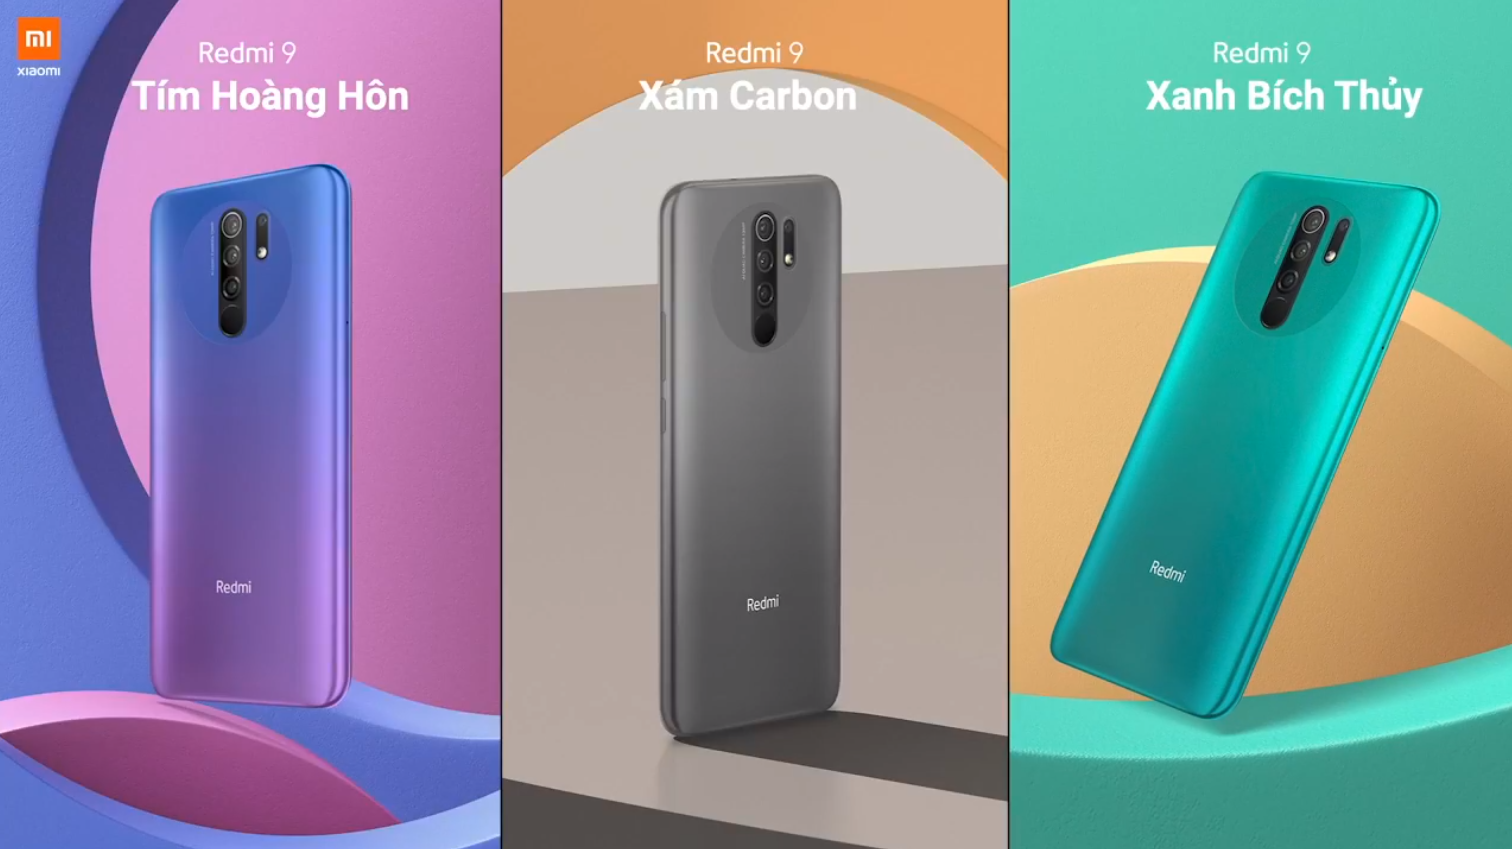 Sforum - Trang thông tin công nghệ mới nhất Xiaomi-redmi-9-2 Redmi 9 ra mắt tại VN: Smartphone phong cách nhất, màn hình lớn nhất, nhiều công nghệ nhất và giá 